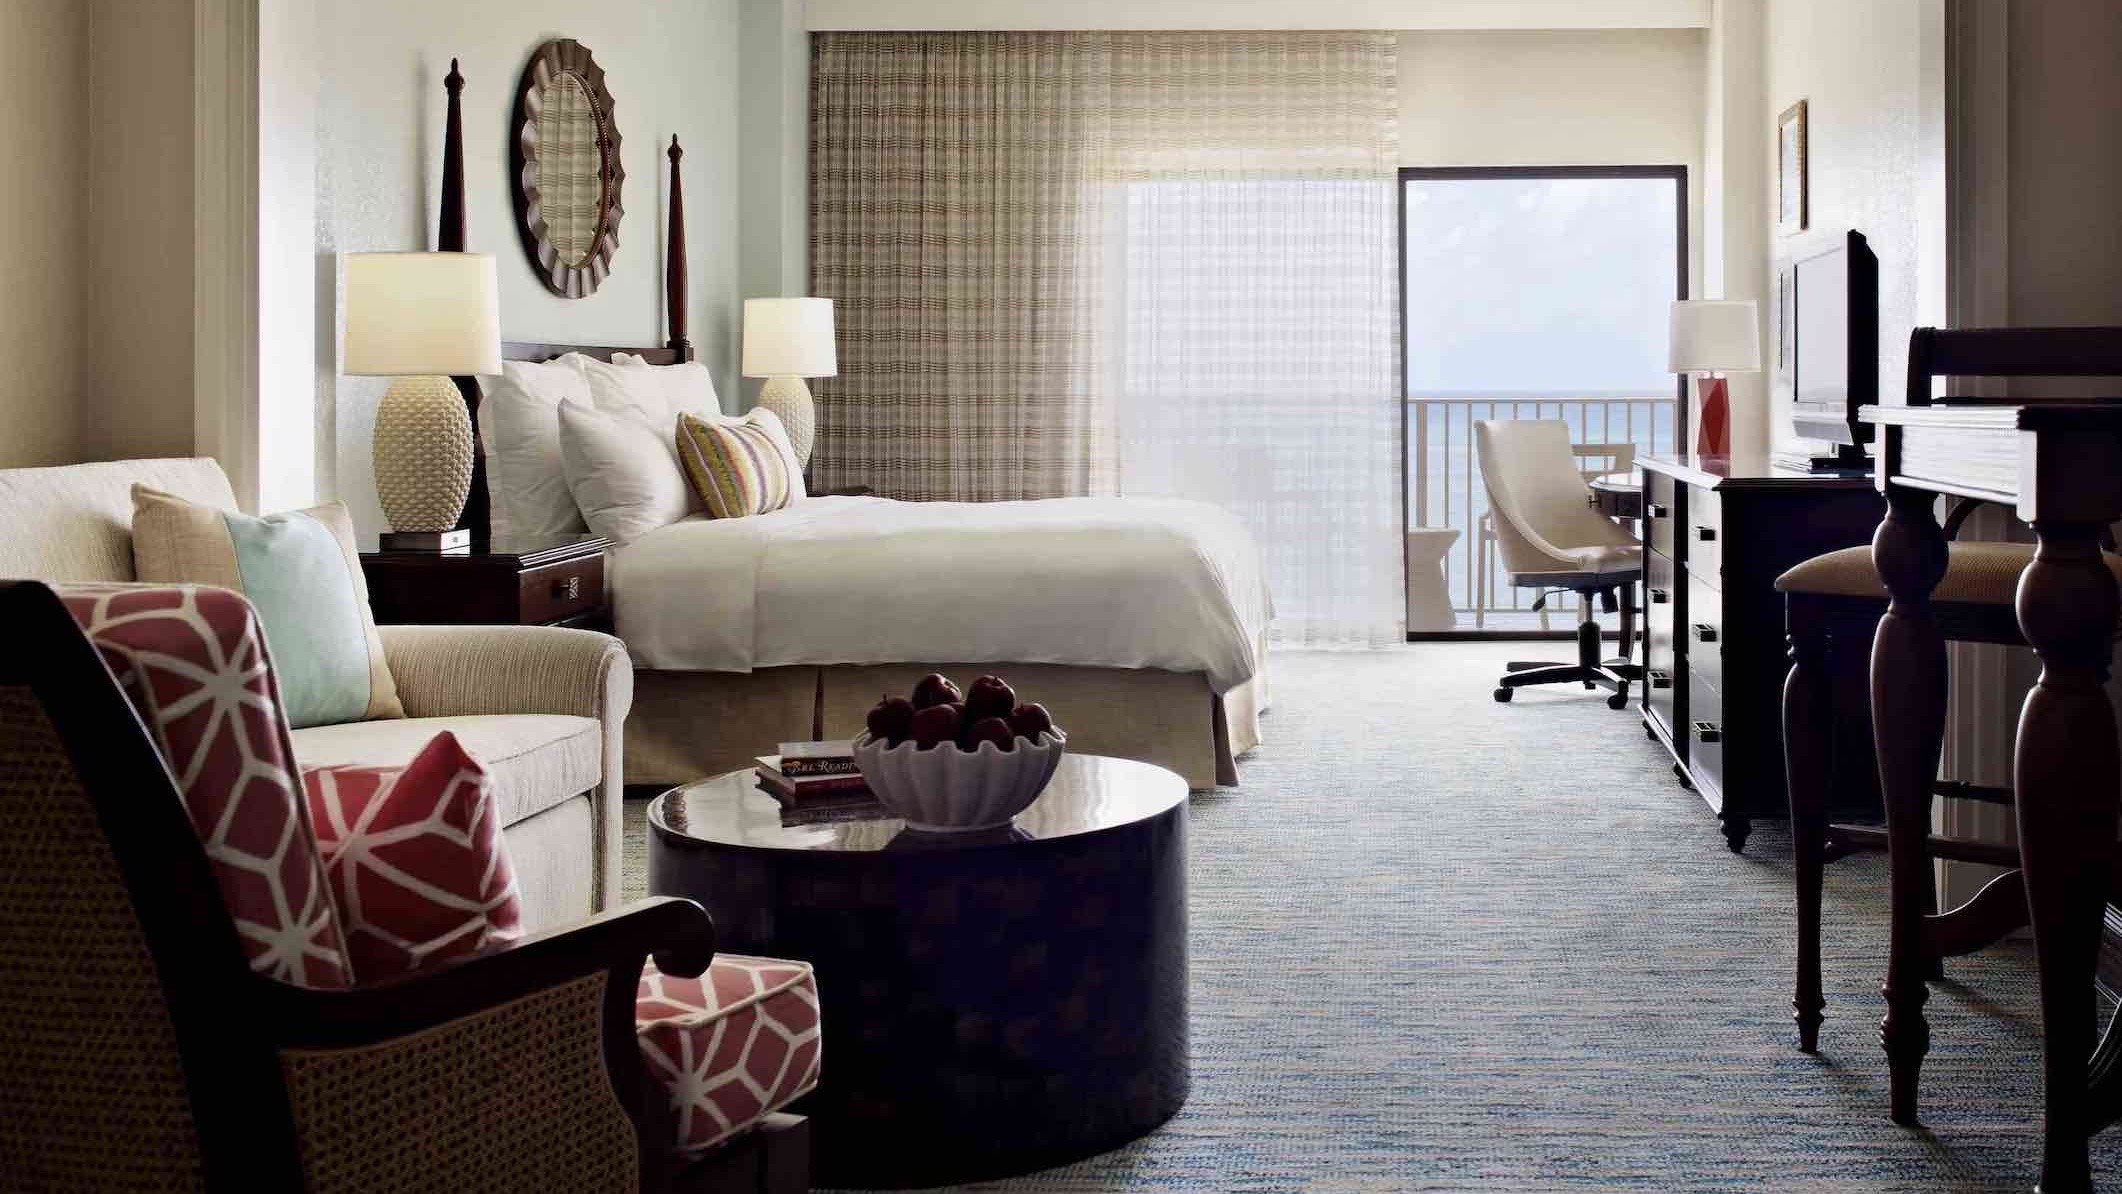 Grand Cayman Marriott Beach Resort bedroom with ocean view